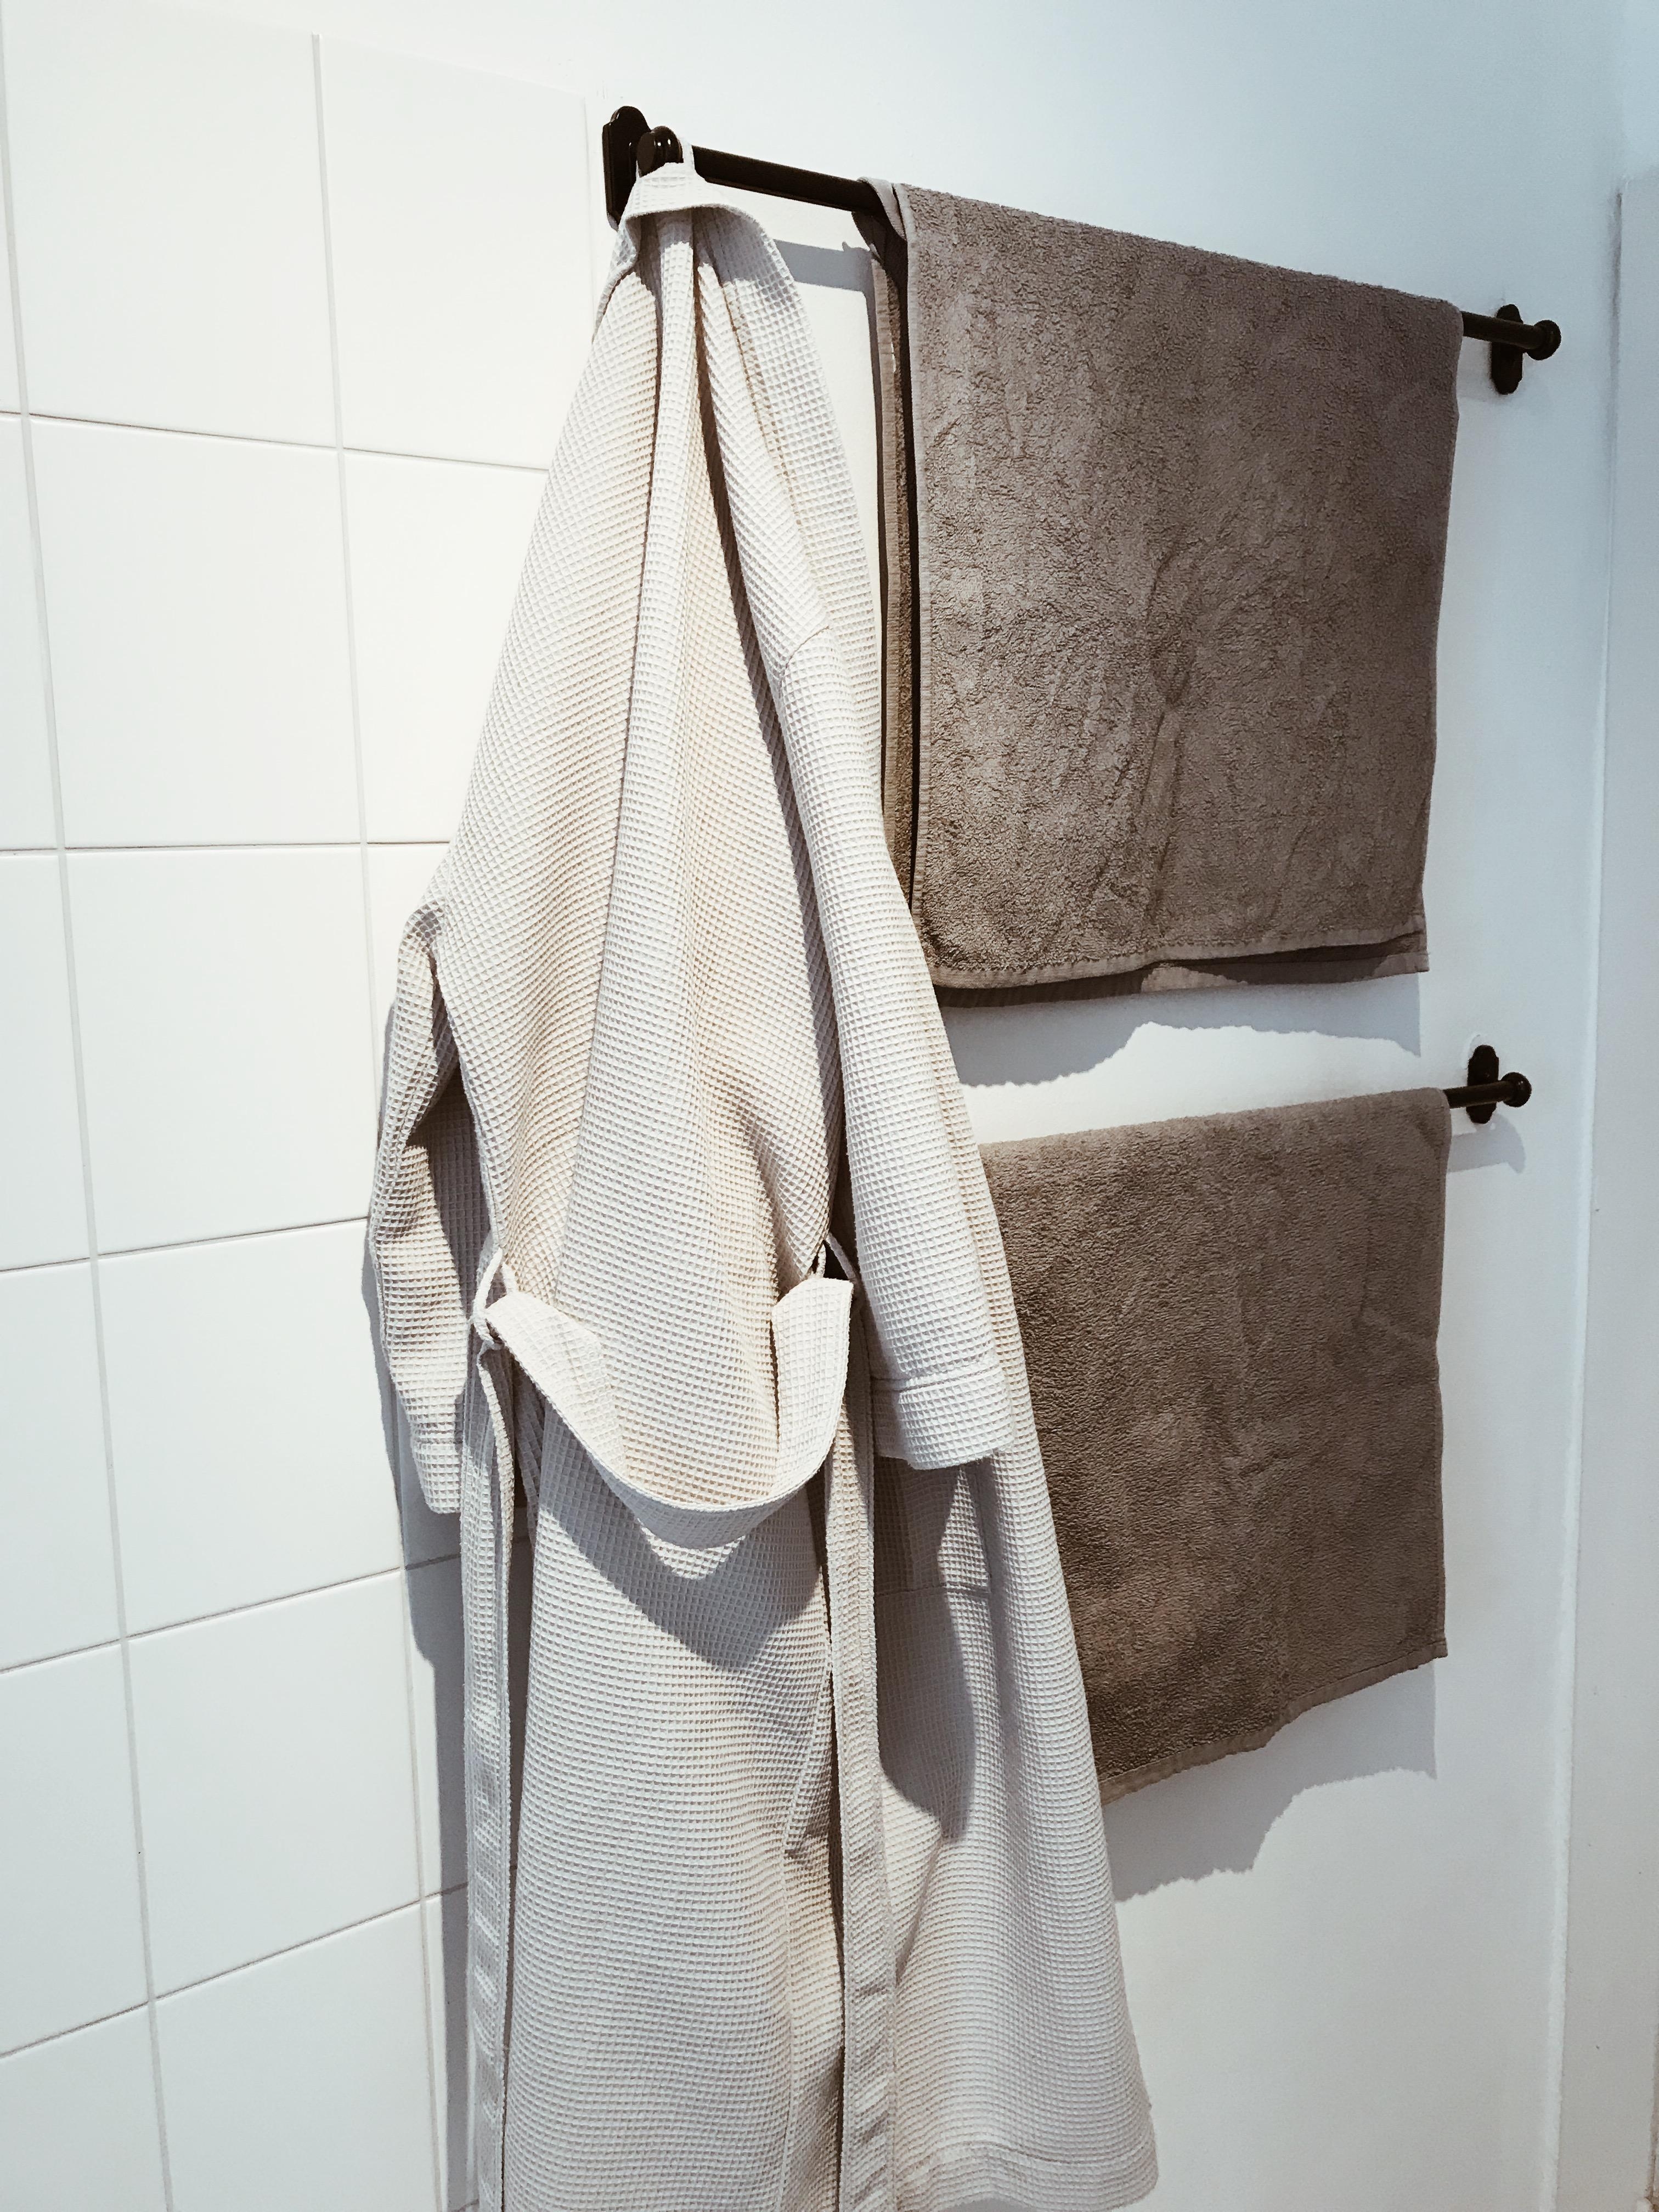 Auf gleiche Farben achten wir generell und im Badezimmer besonders. #couchliebt #badezimmer #skandistyle